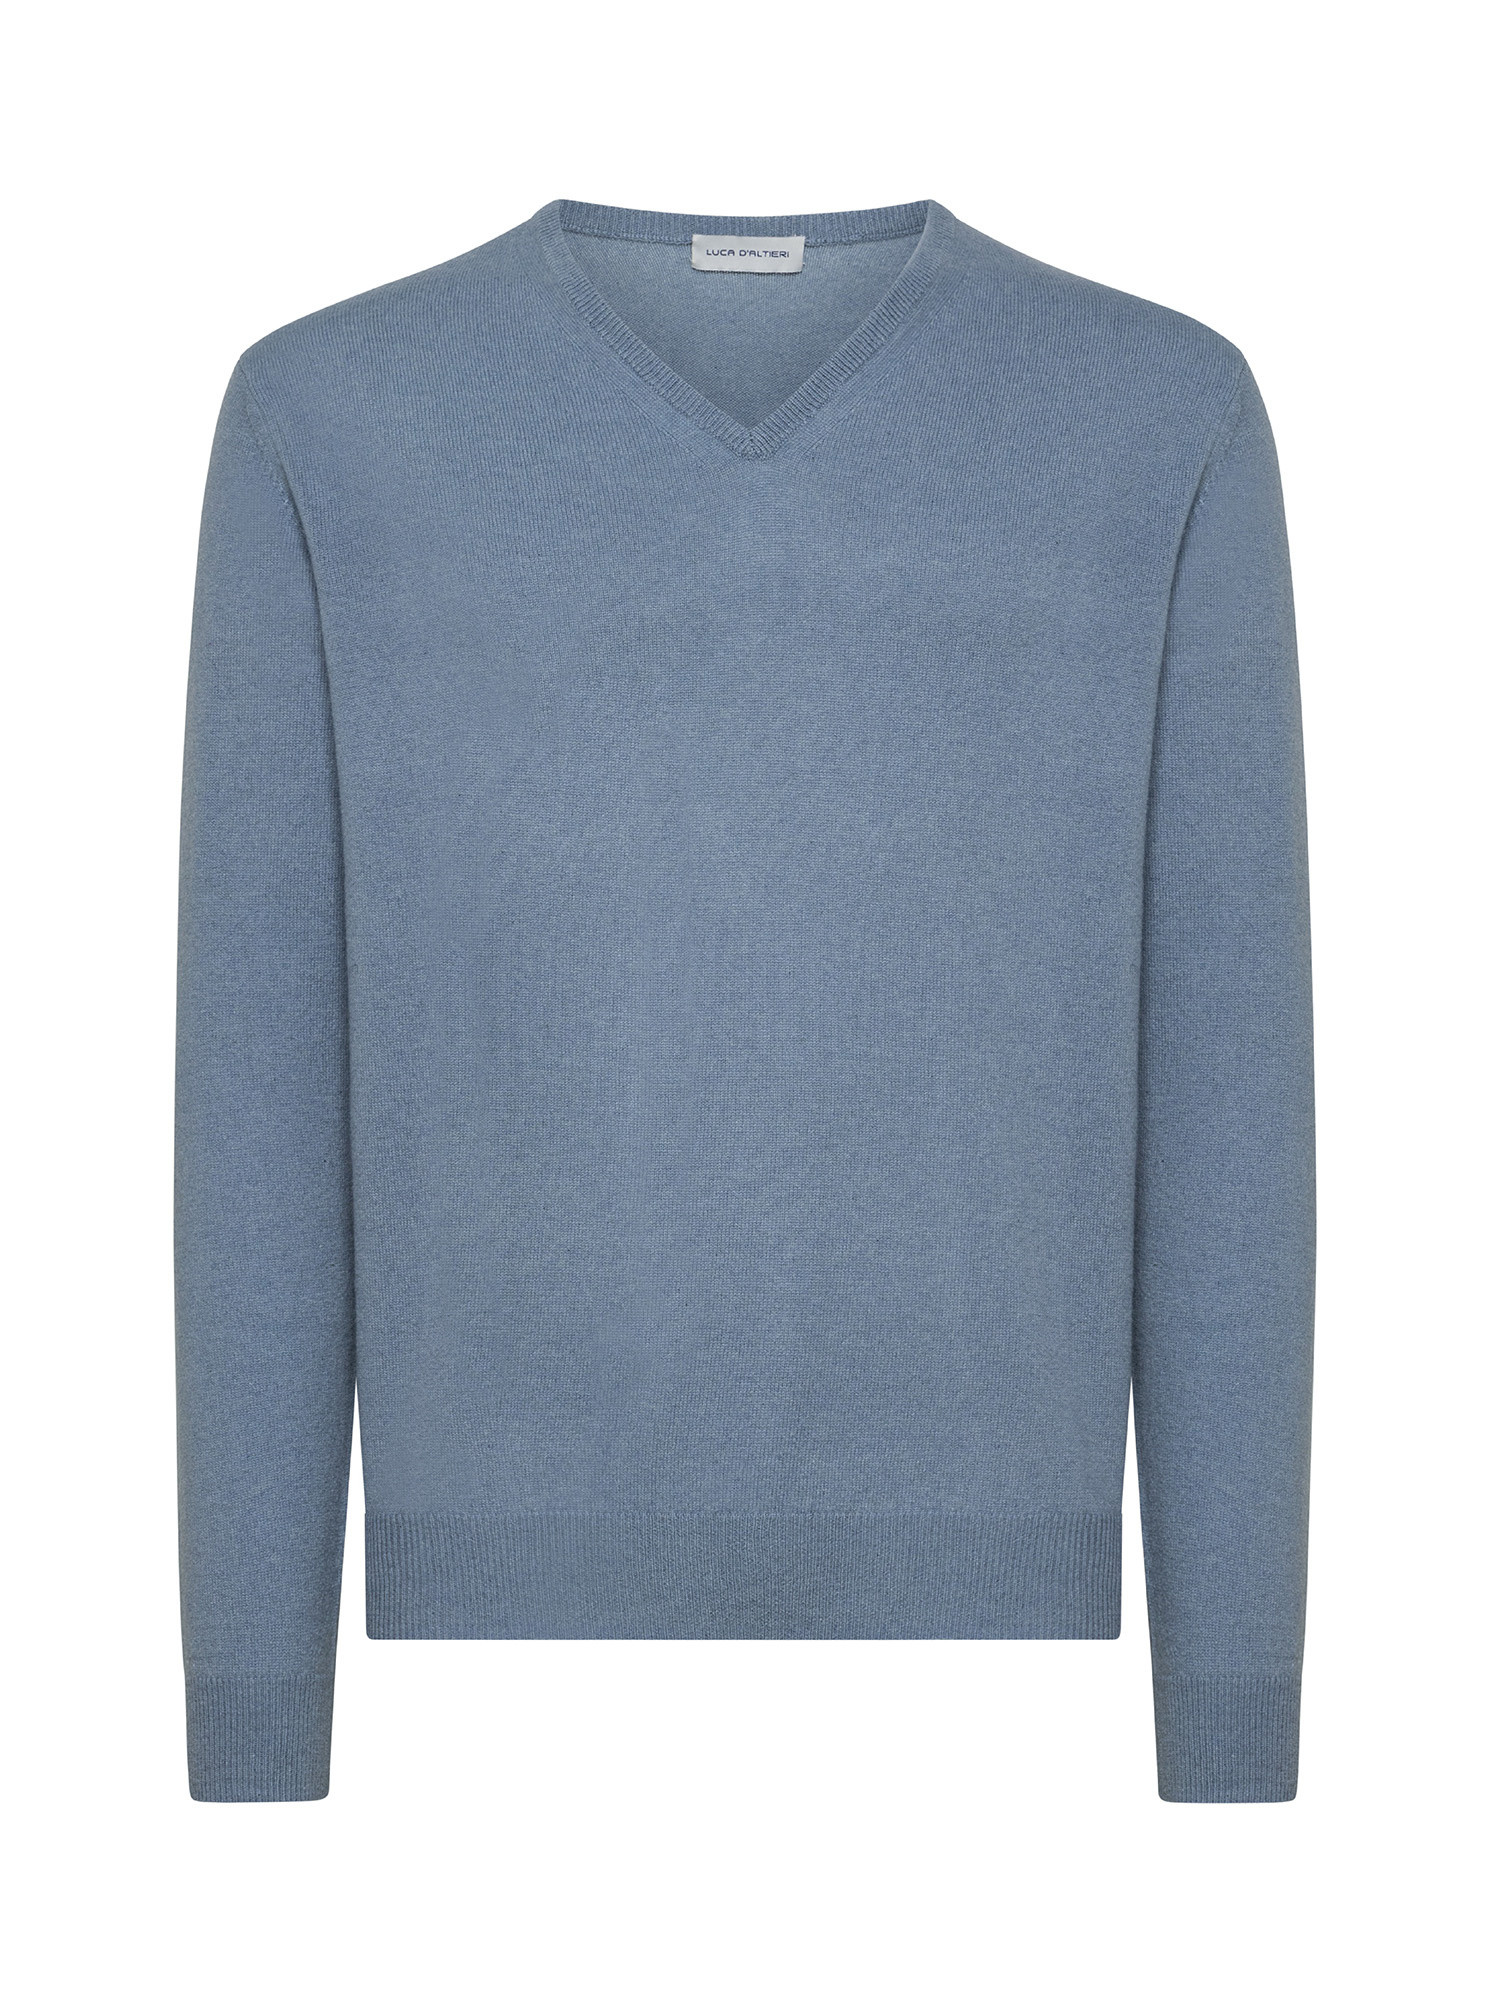 Пуловер с V-образным вырезом из чистого кашемира Luca D'Altieri, голубой пуловер с v образным вырезом xs бежевый